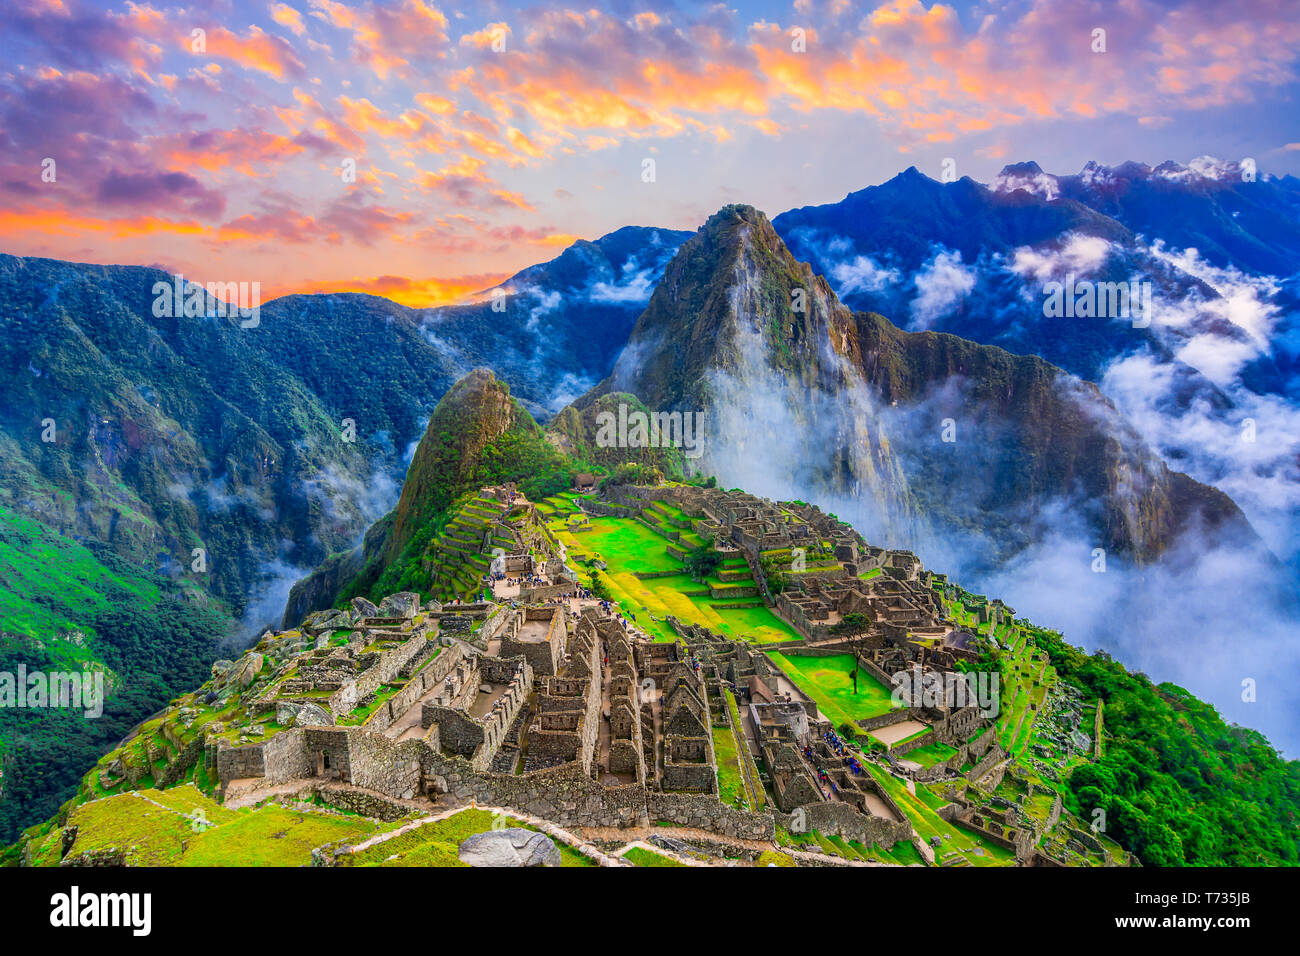 Machu Picchu, Cusco, Perú: Panorama de la ciudad perdida de los Incas, Machu Picchu y Wayna Picchu terrazas agrícolas, pico en el fondo,antes del amanecer Foto de stock